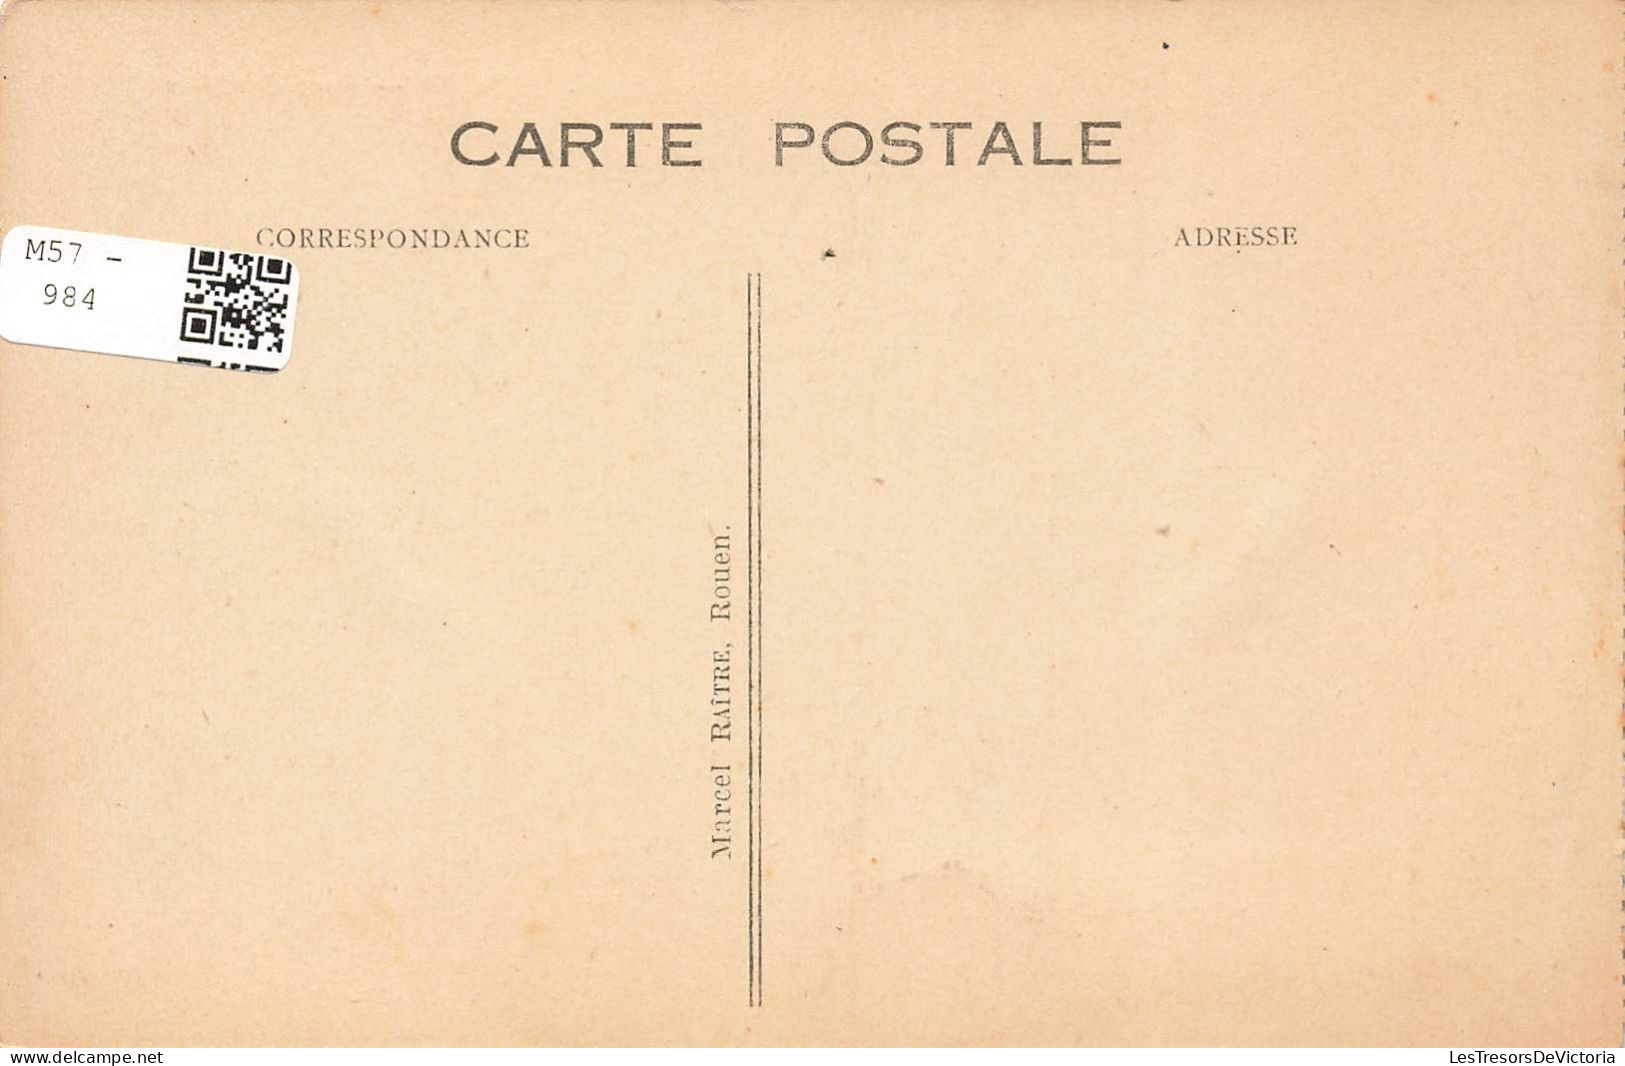 FRANCE - Rouen - Pont Boieldieu - Carte Postale Ancienne - Rouen